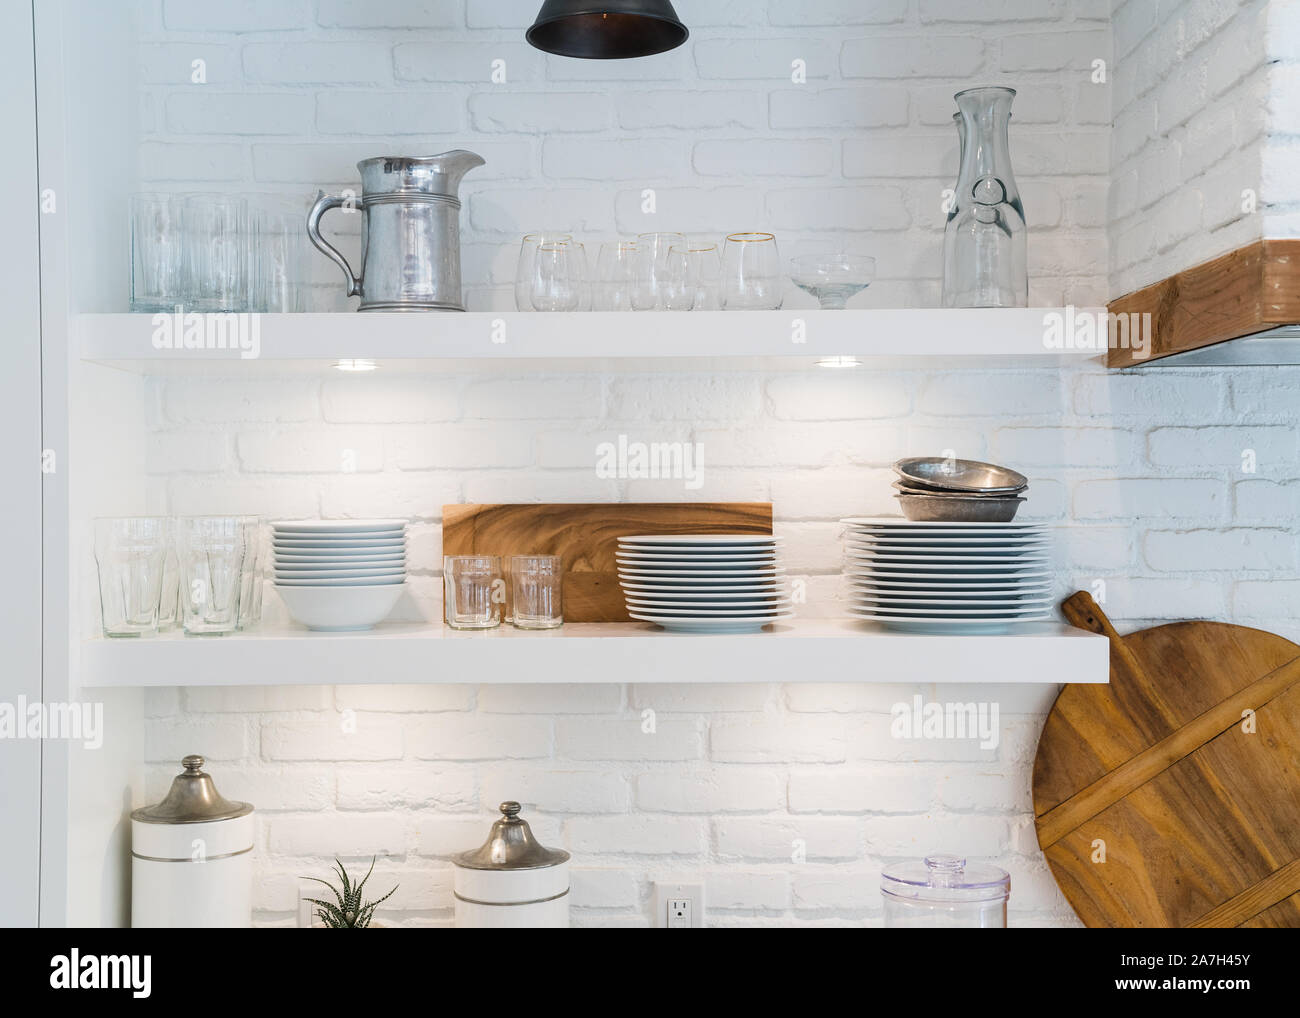 Un design interno moderno e bianco cucina rustica Foto Stock